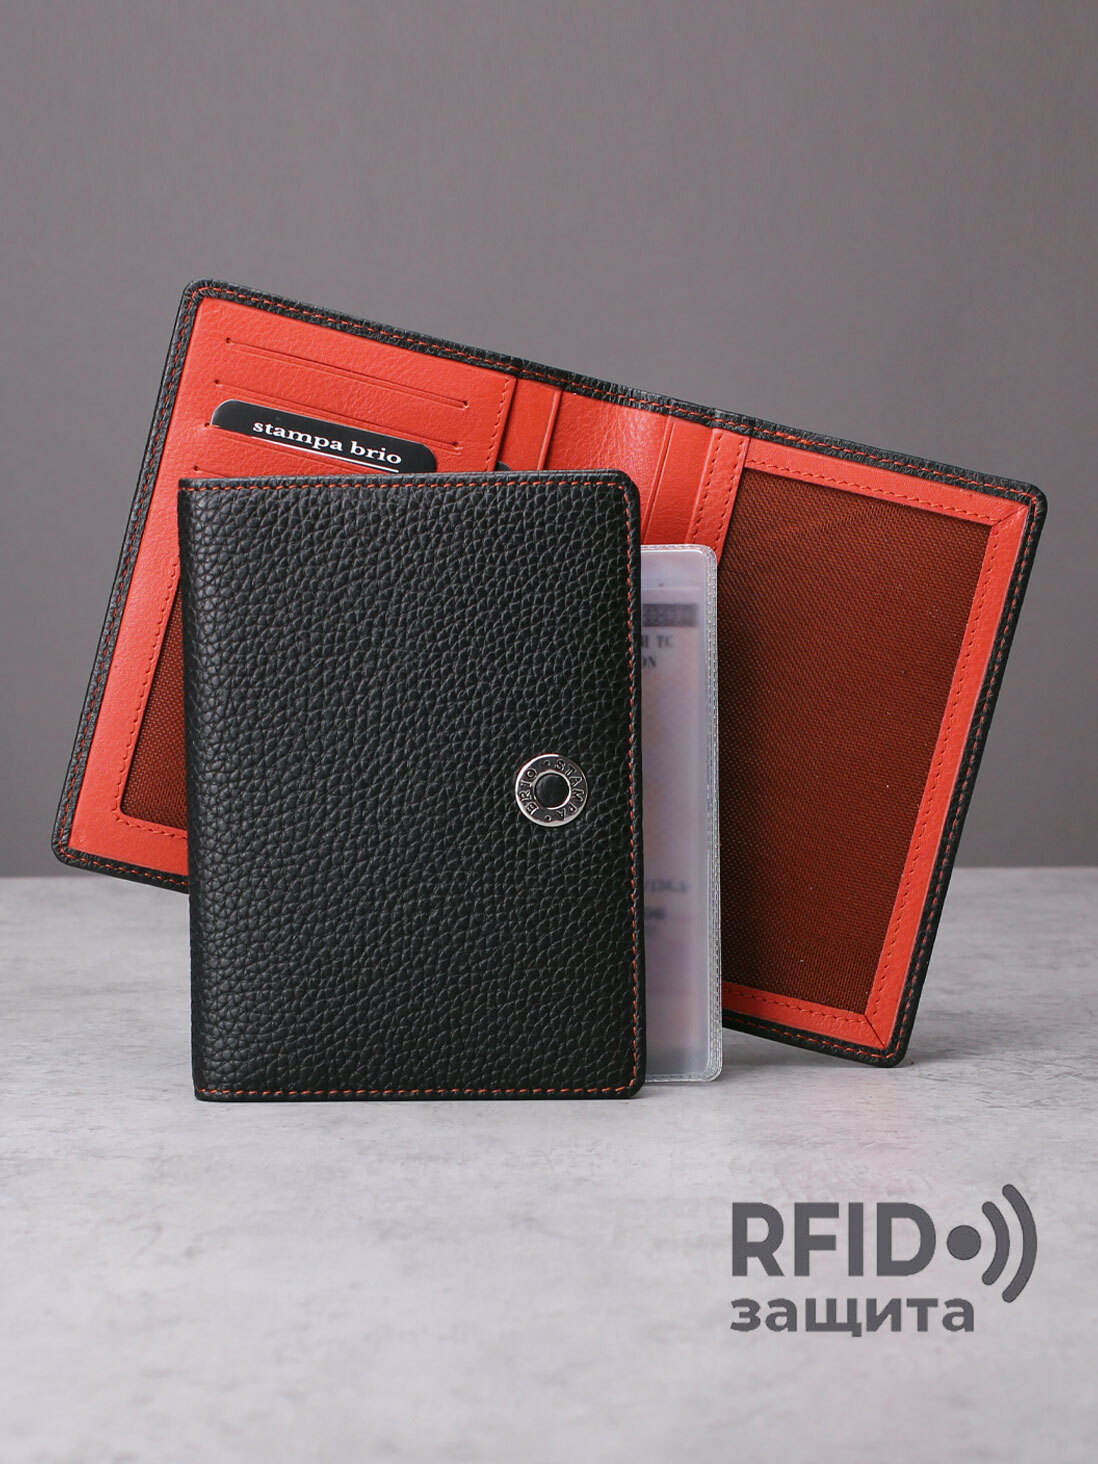 293 R - Обложка для документов с RFID защитой